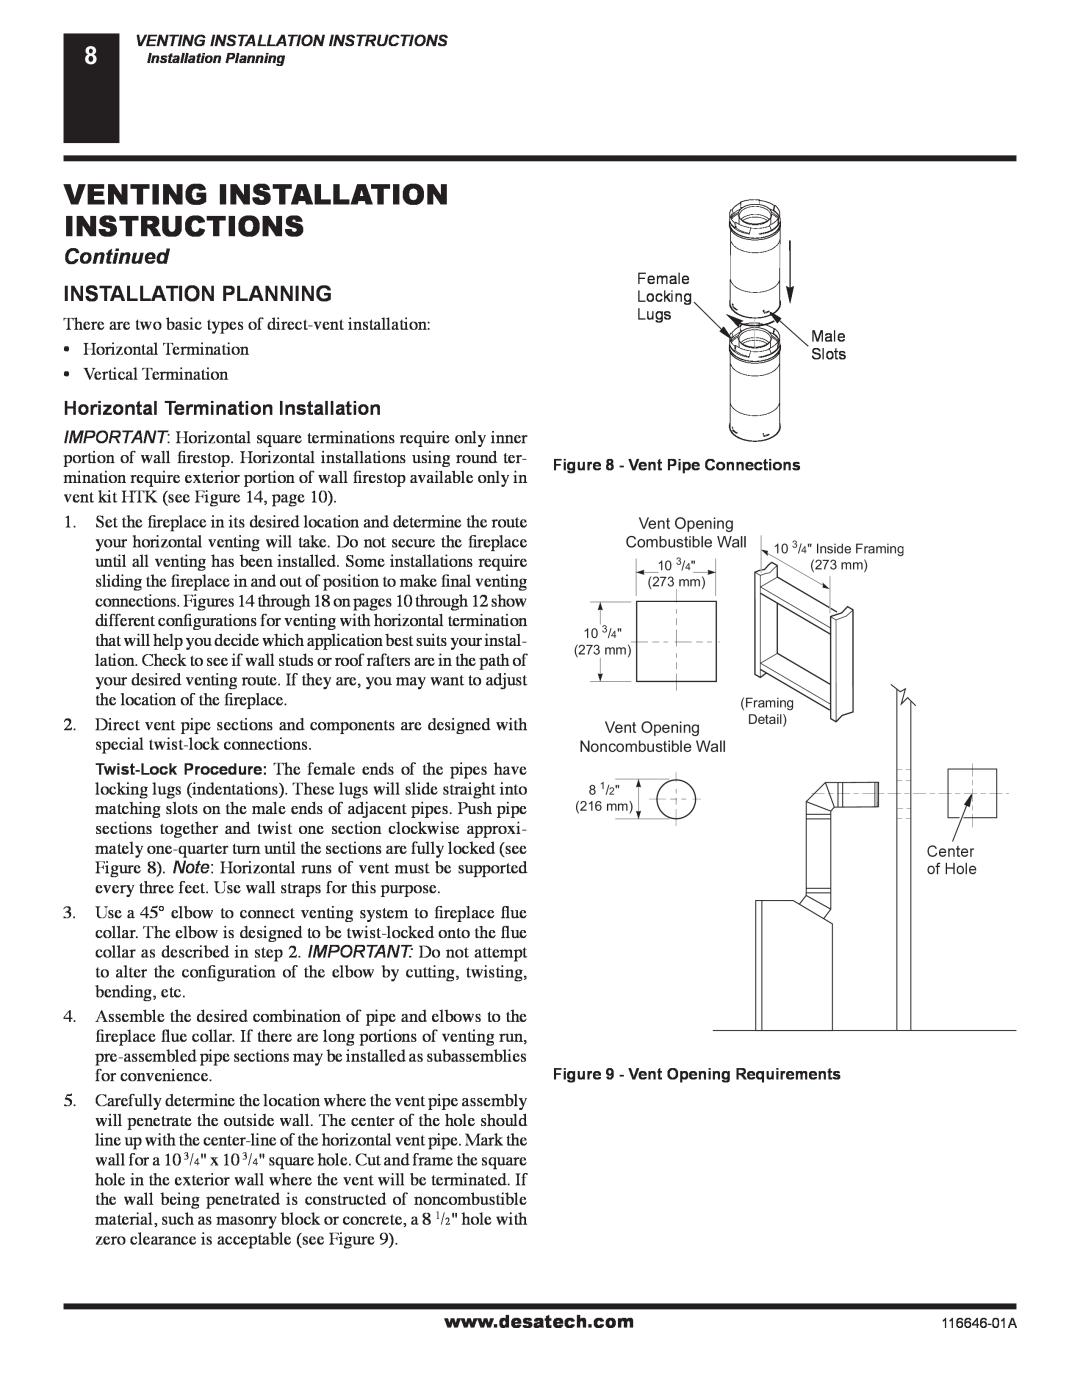 Desa CGDV32NR Venting Installation Instructions, Continued, Installation Planning, Horizontal Termination Installation 